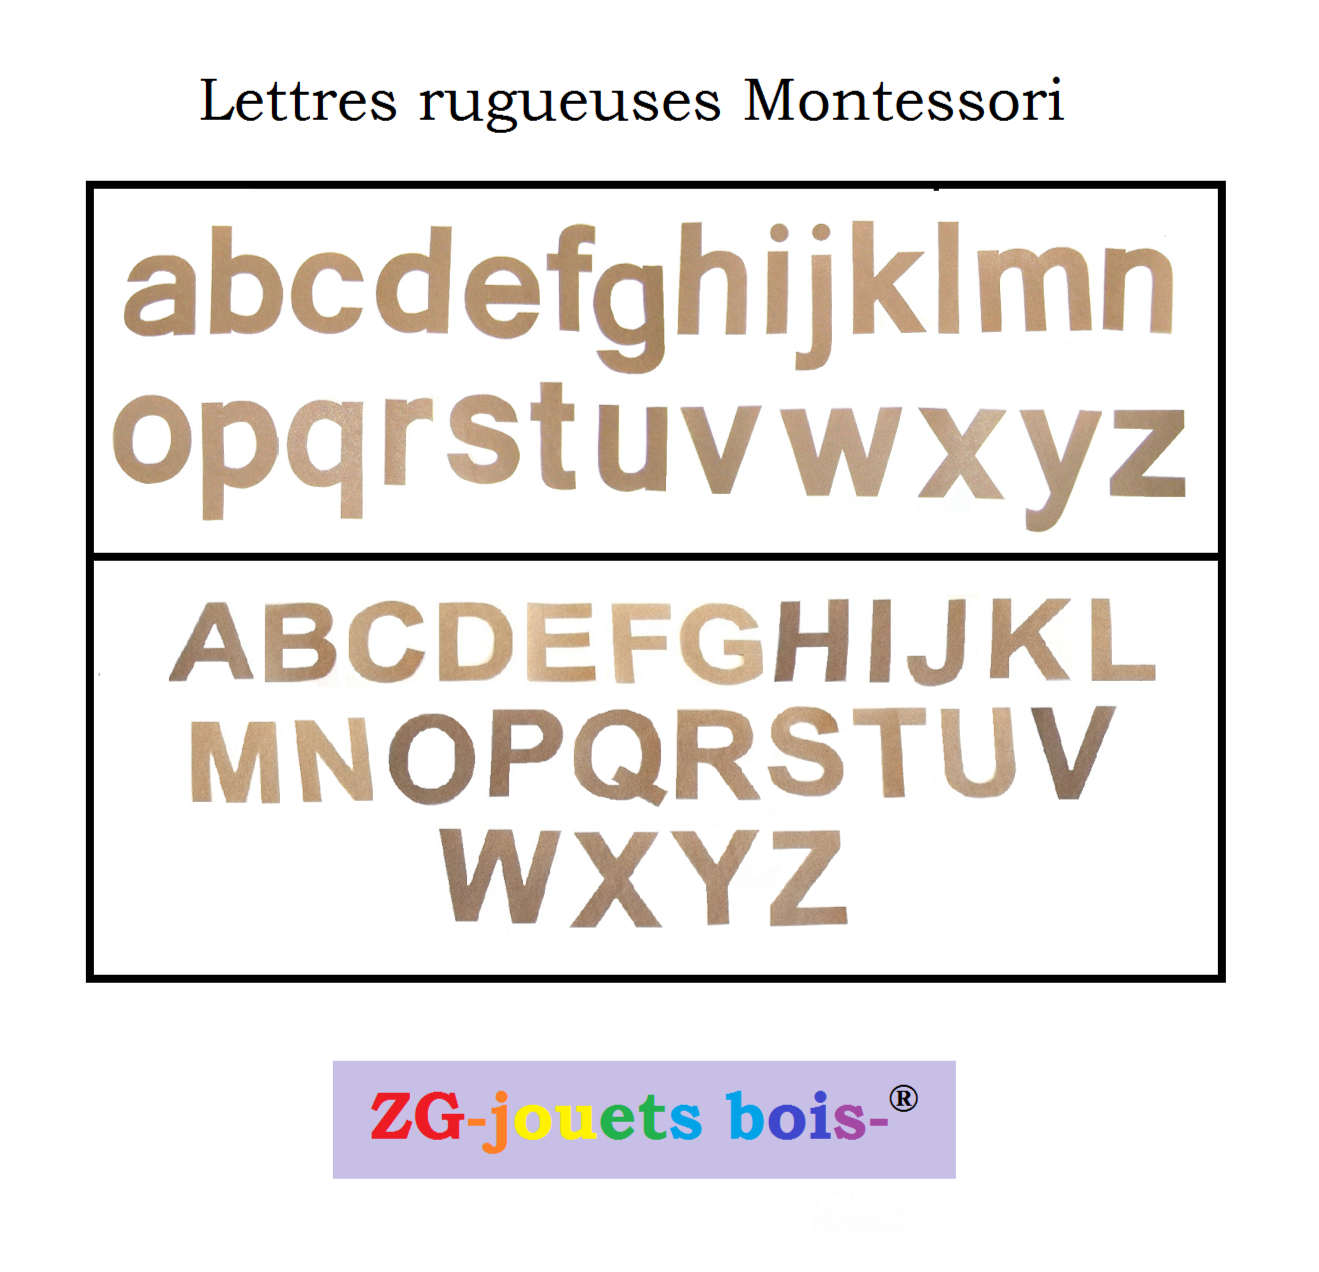 lot lettres rugueuses montessori imprimerie majuscules et minusculesdécoupées à la main par ZG-jouetsbois-